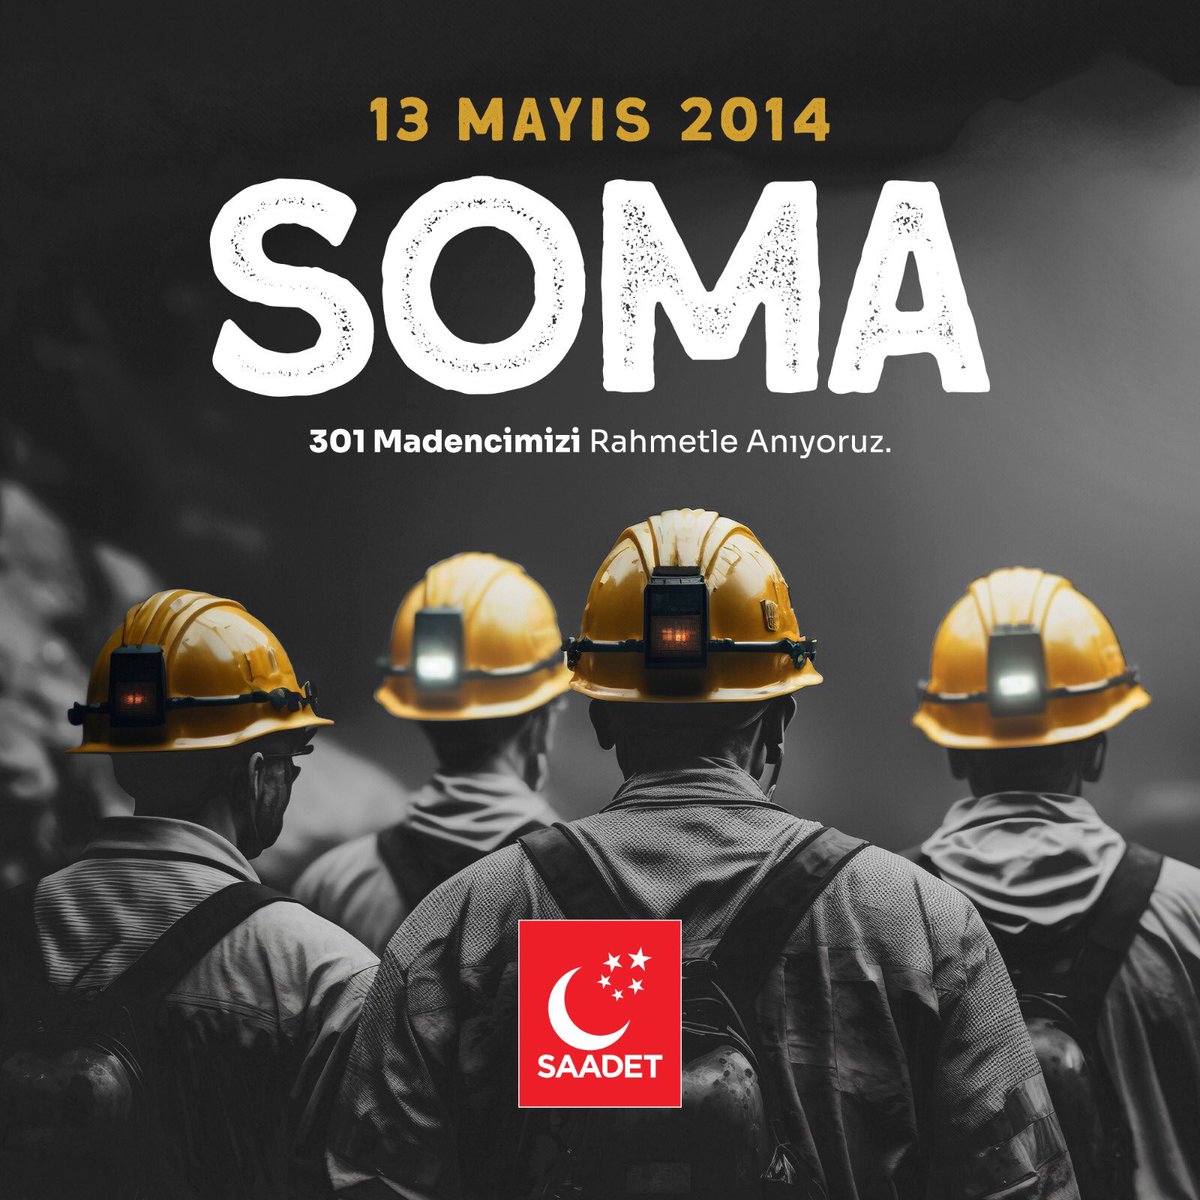 Soma’dan sonra aynı acıları Ermenek’te, Madenköy’de, Amasra’da bir kez daha yaşadık. Denetim ve tedbirle en büyük kıymetin insana verildiği bir madenciliğin tesis edilmesini vurguluyor; Soma Maden Faciasında hayatını kaybeden 301 madencimizi rahmetle anıyoruz.